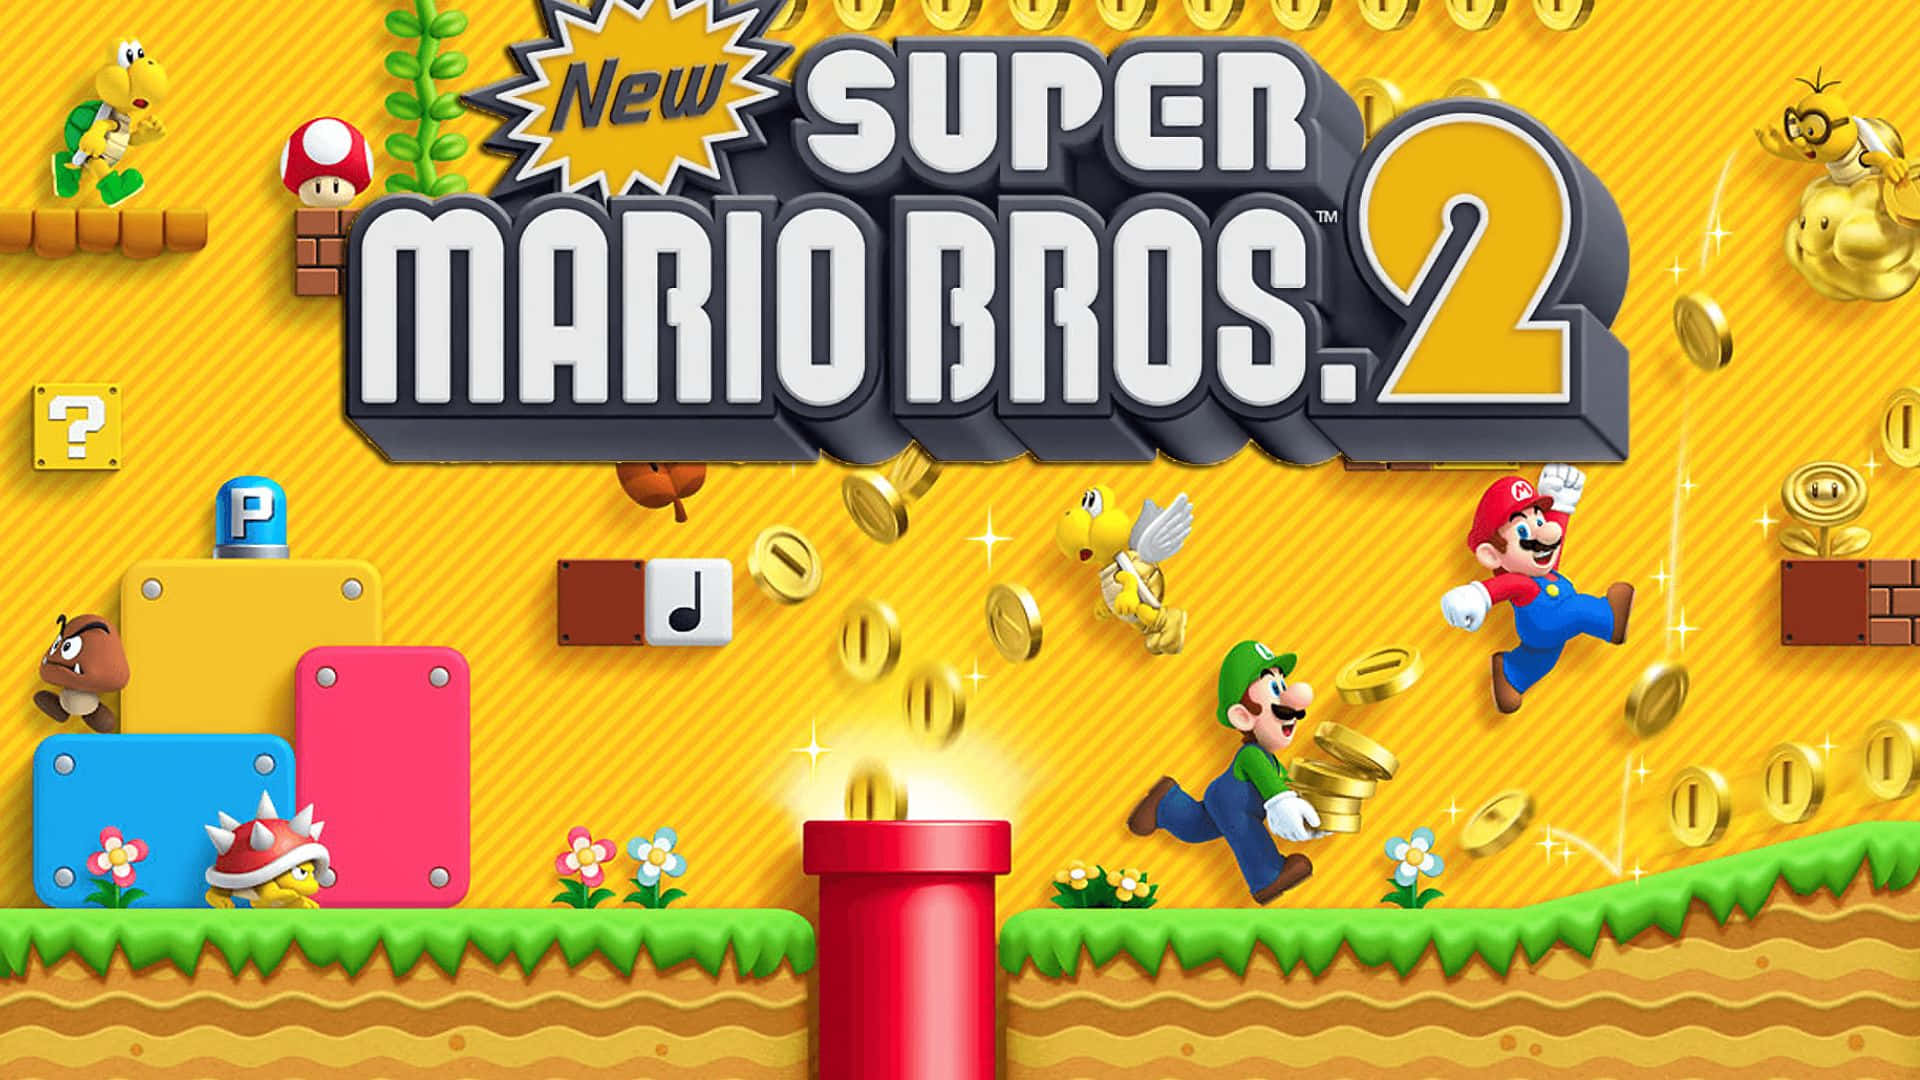 Newer mario bros download. New super Mario Bros 2 Nintendo 3ds. New super Mario Bros. Нинтендо ДС. New super Mario Bros 2 Wii. New super Mario Bros Nintendo DS.